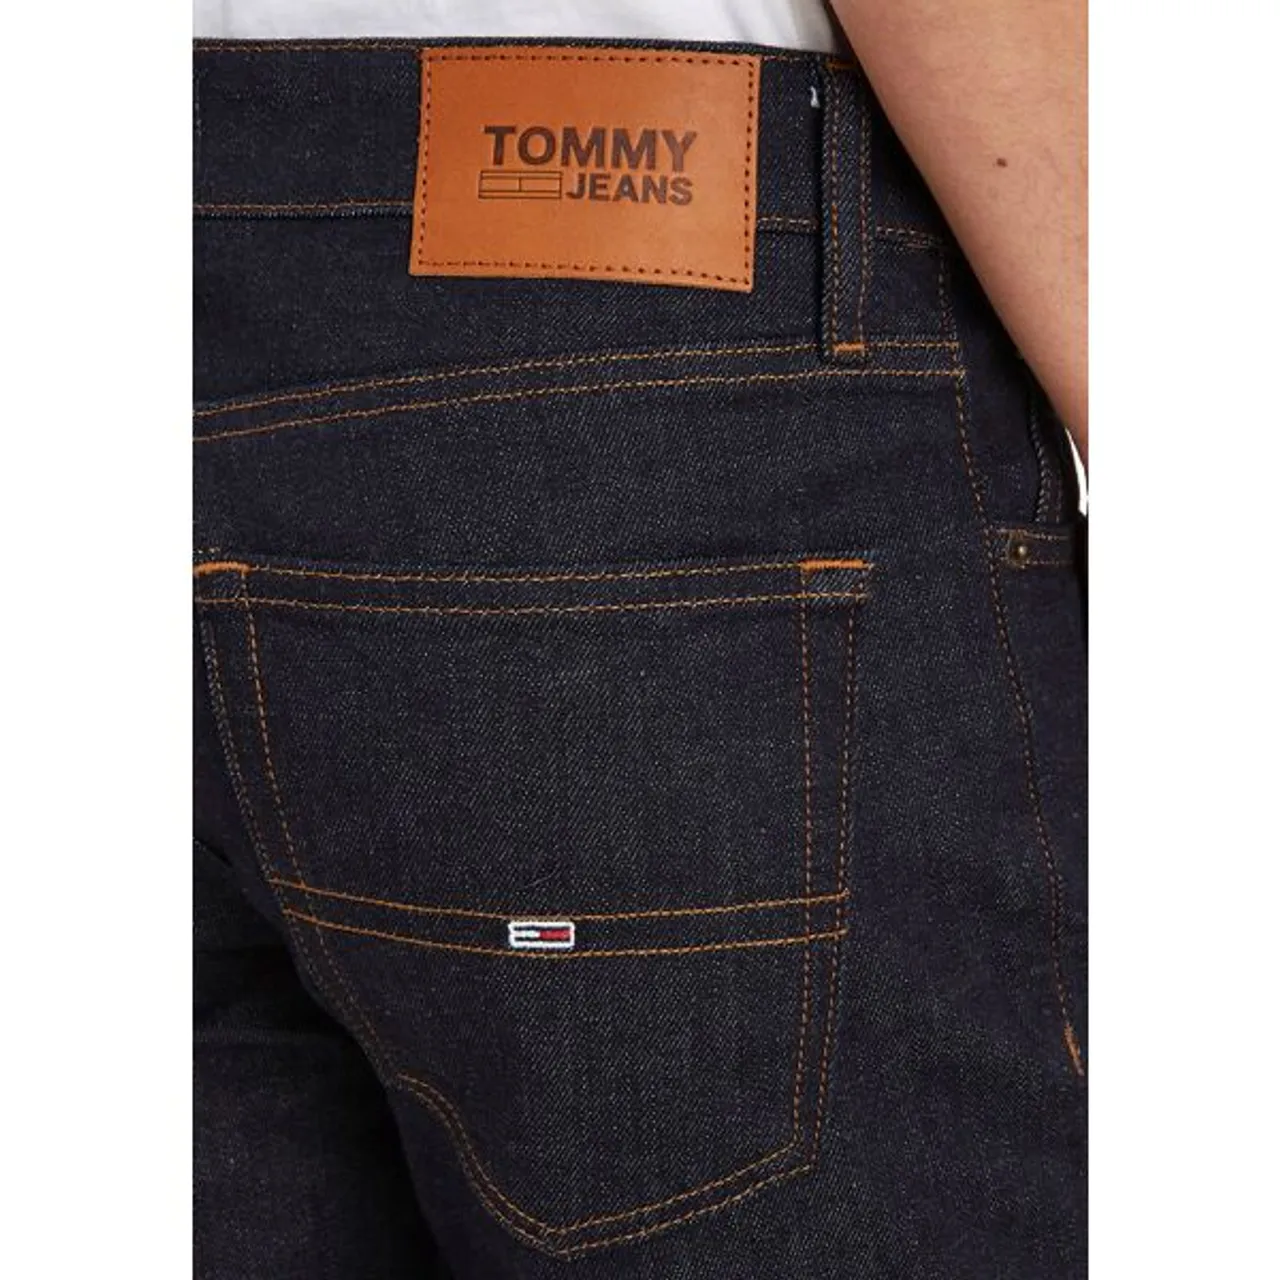 Slim-fit-Jeans TOMMY JEANS "SLIM SCANTON" Gr. 36, Länge 36, blau (rinsed) Herren Jeans Slim Fit